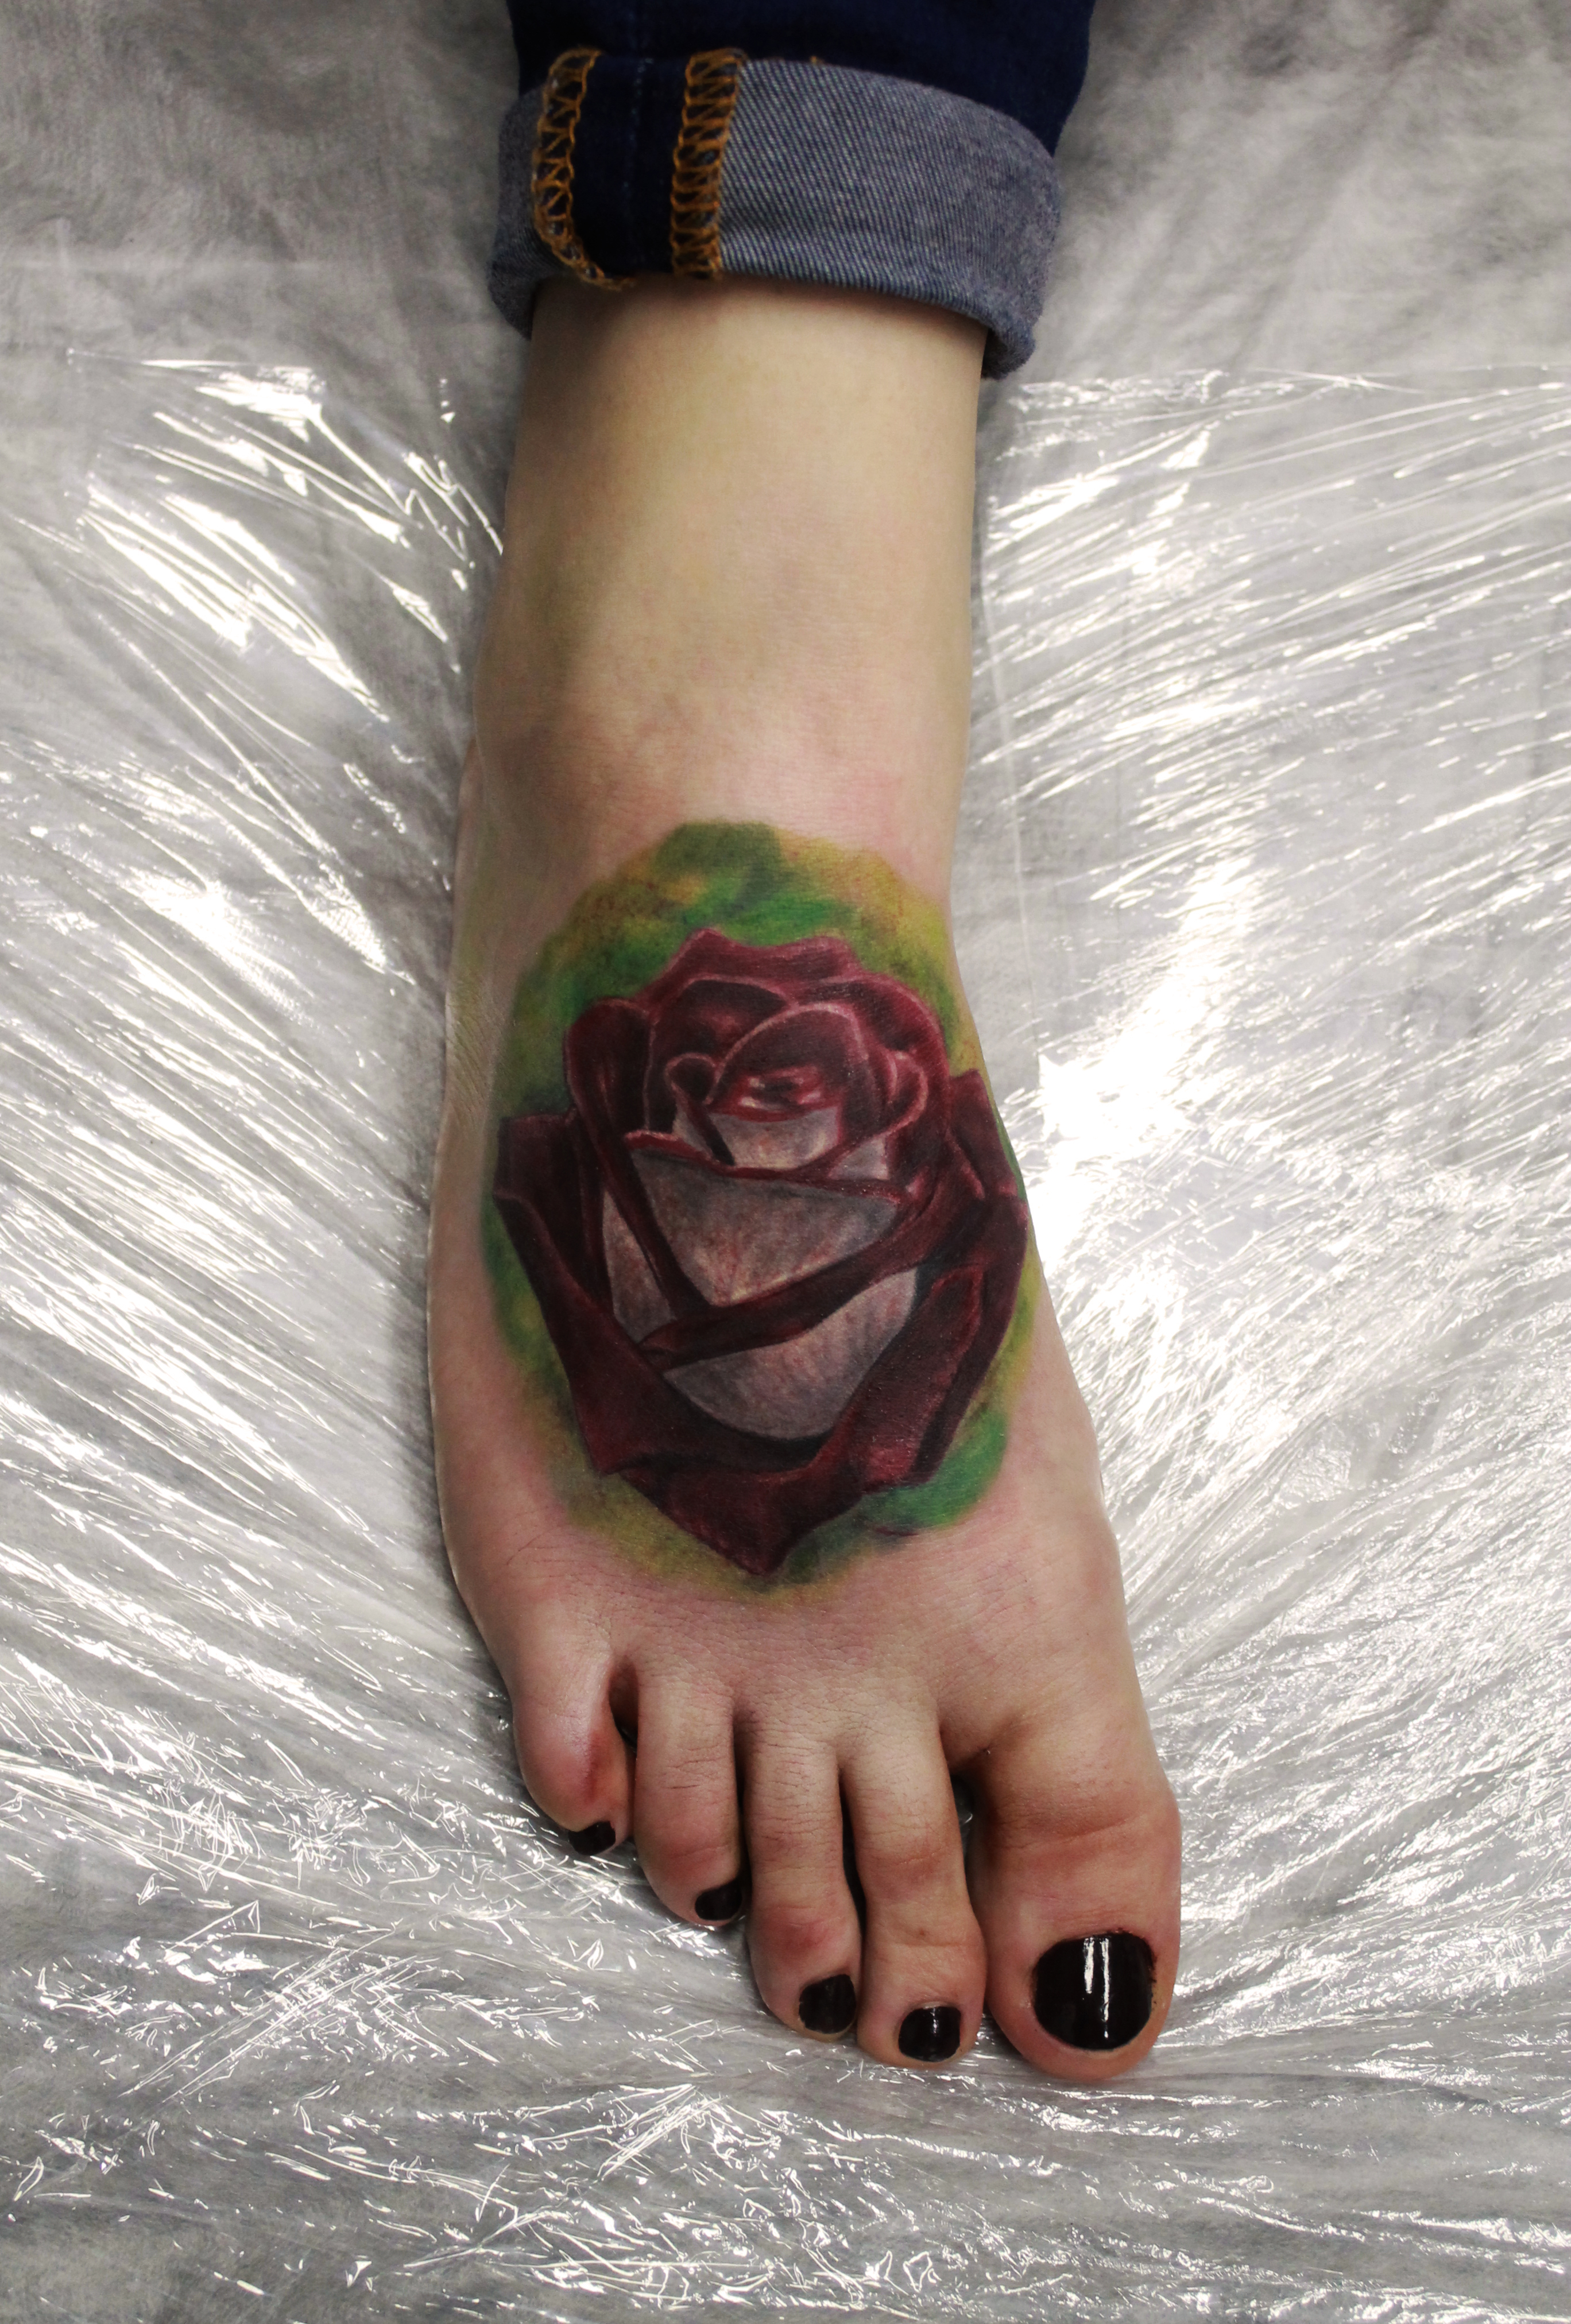 Художественная татуировка "Роза". Мастер Анастасия Енот.